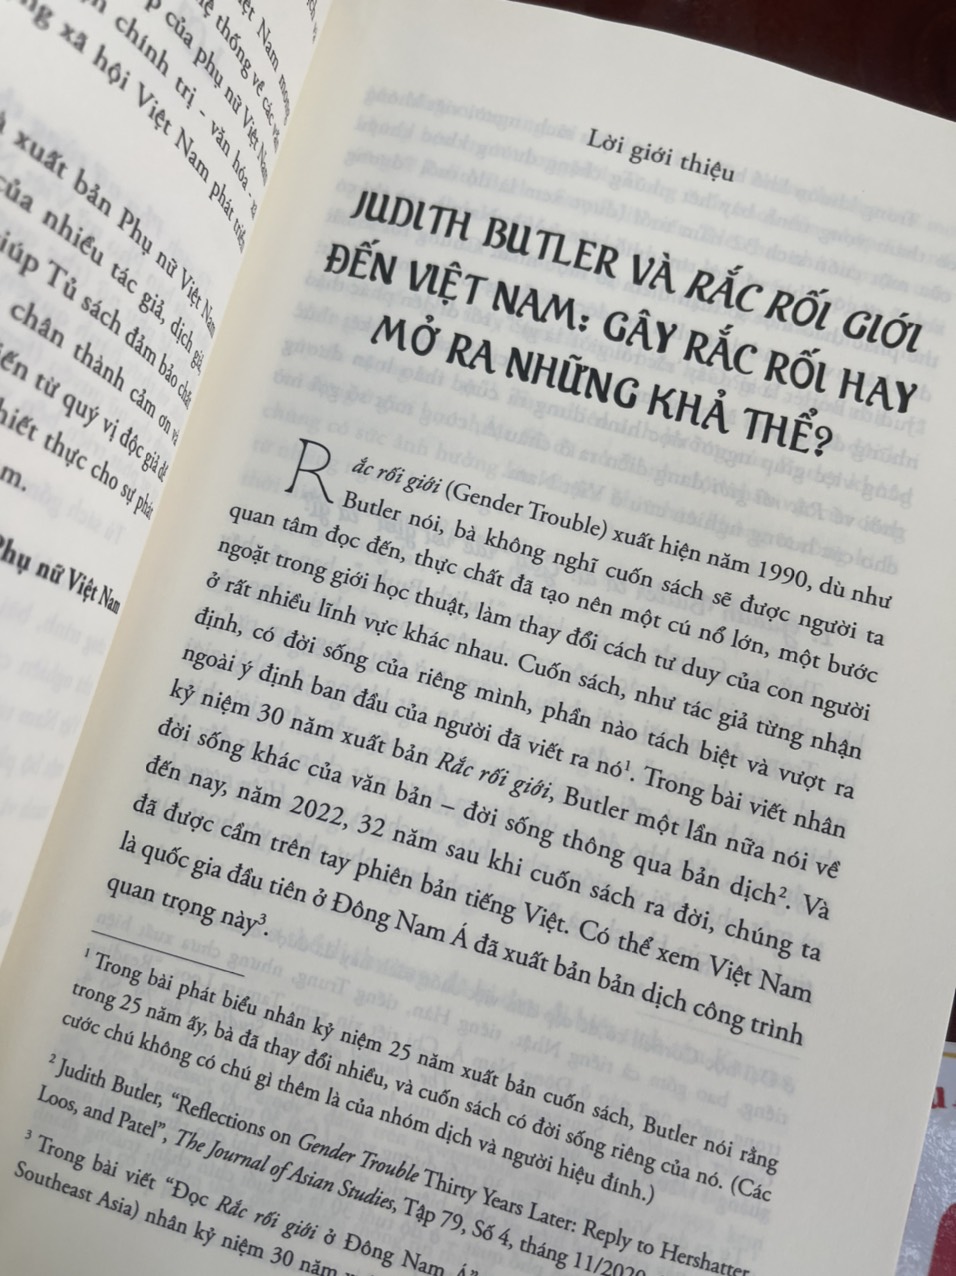 RẮC RỐI GIỚI – GENDER TROUBLE – Judith Butler – Nhóm Tiên Phong dịch – NXB Phụ Nữ (Bìa mềm)